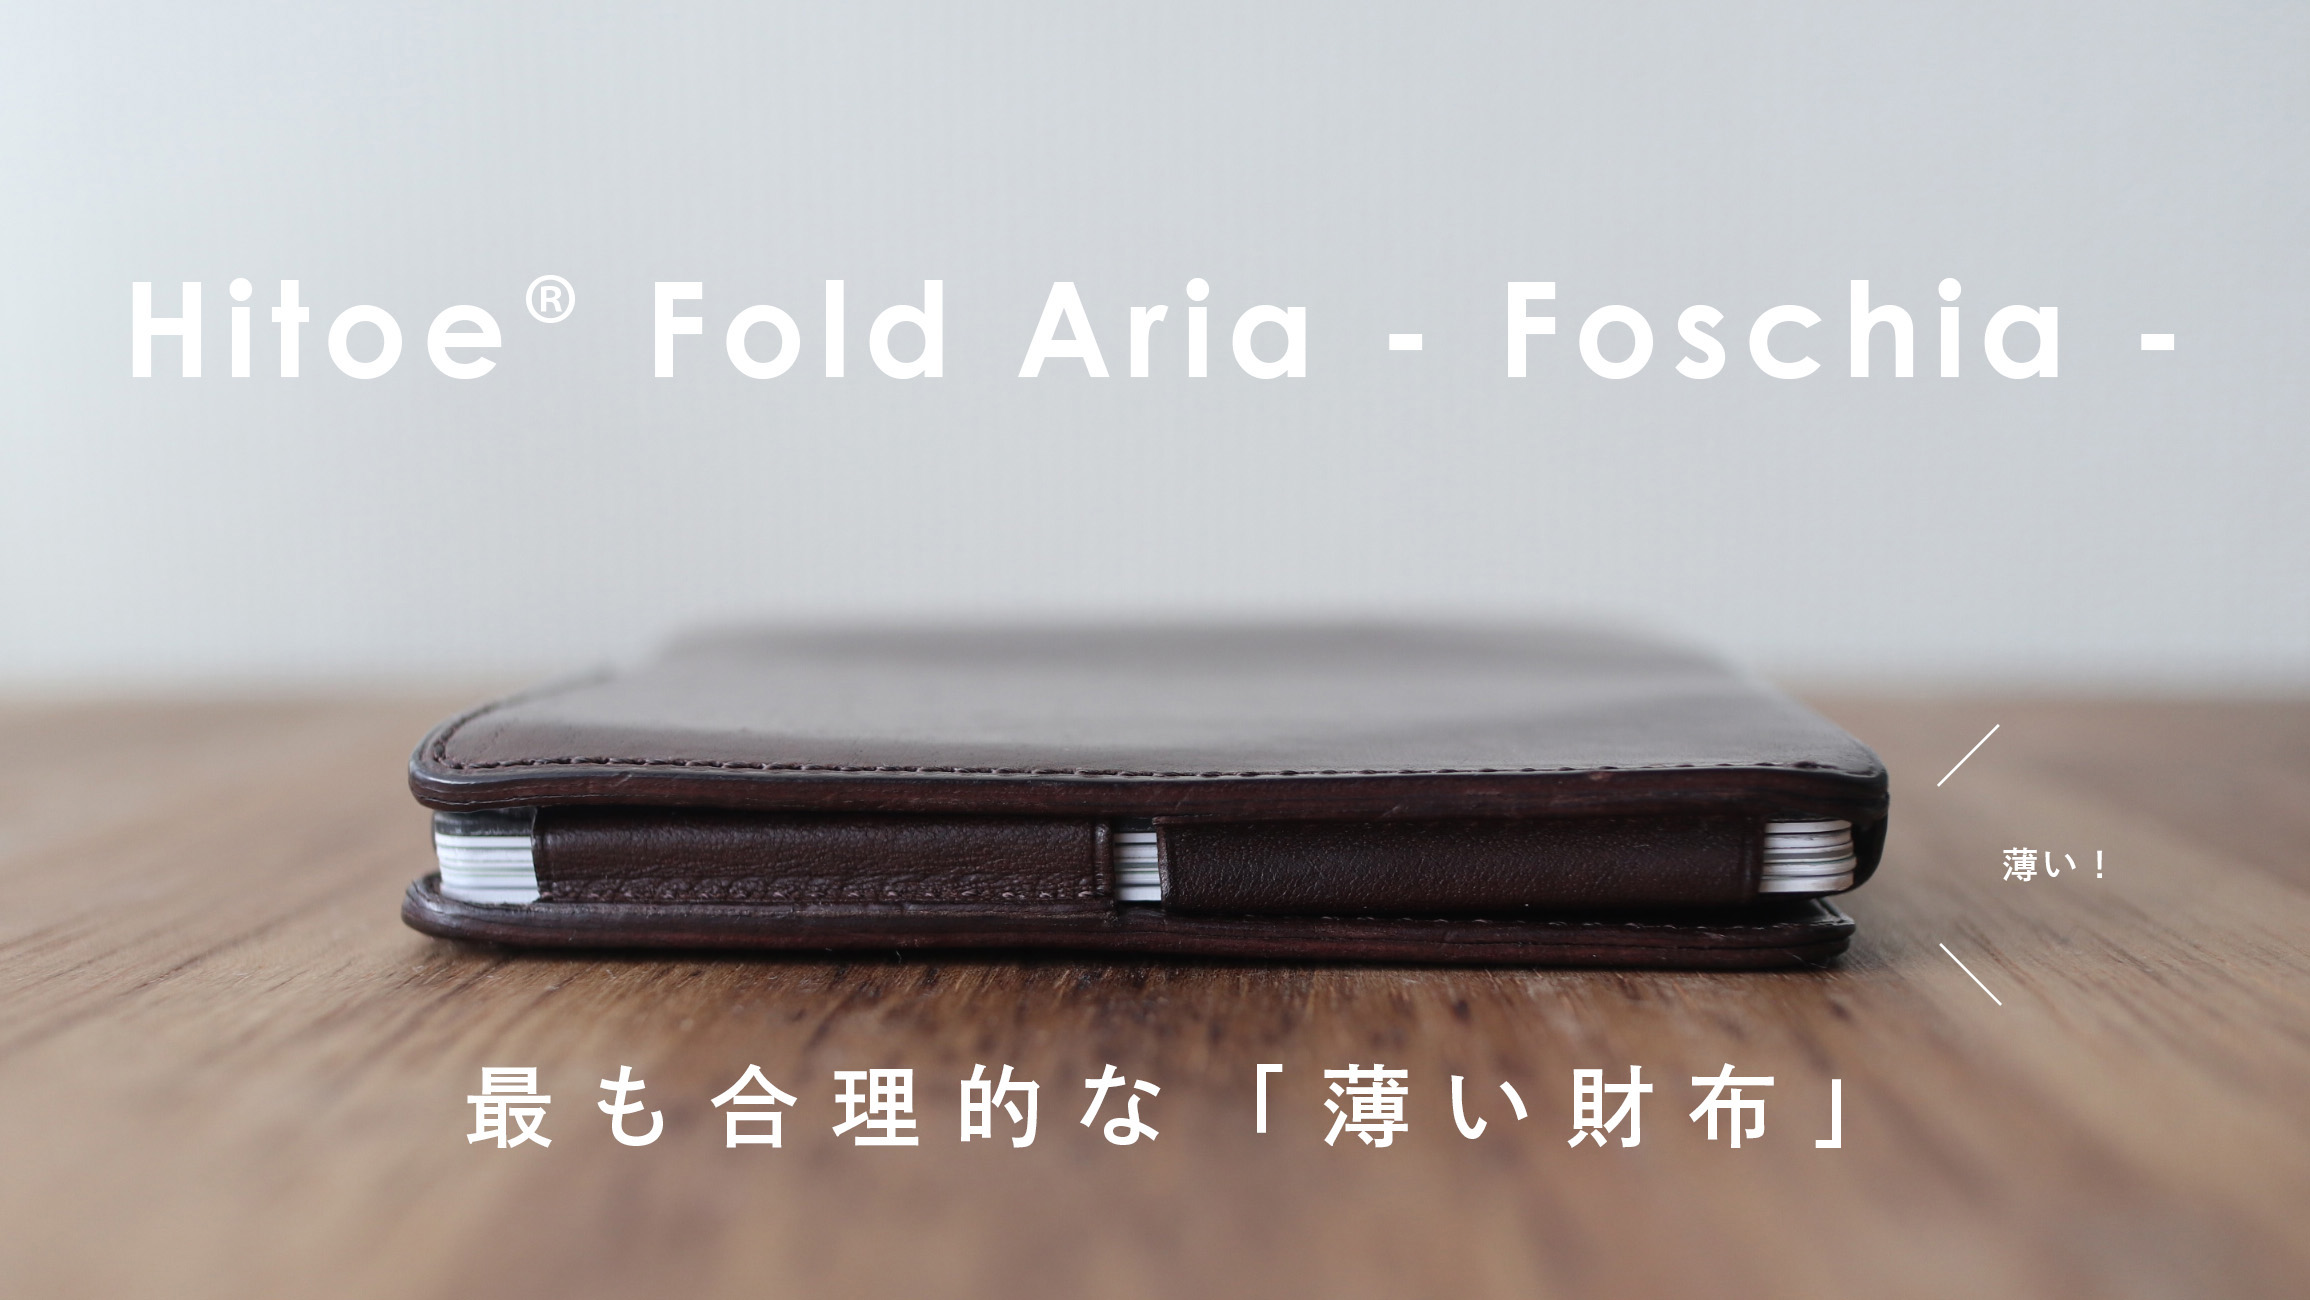 薄い財布「Hitoe Fold Aria -Foschia-」 を1年間使用したので勝手に ...